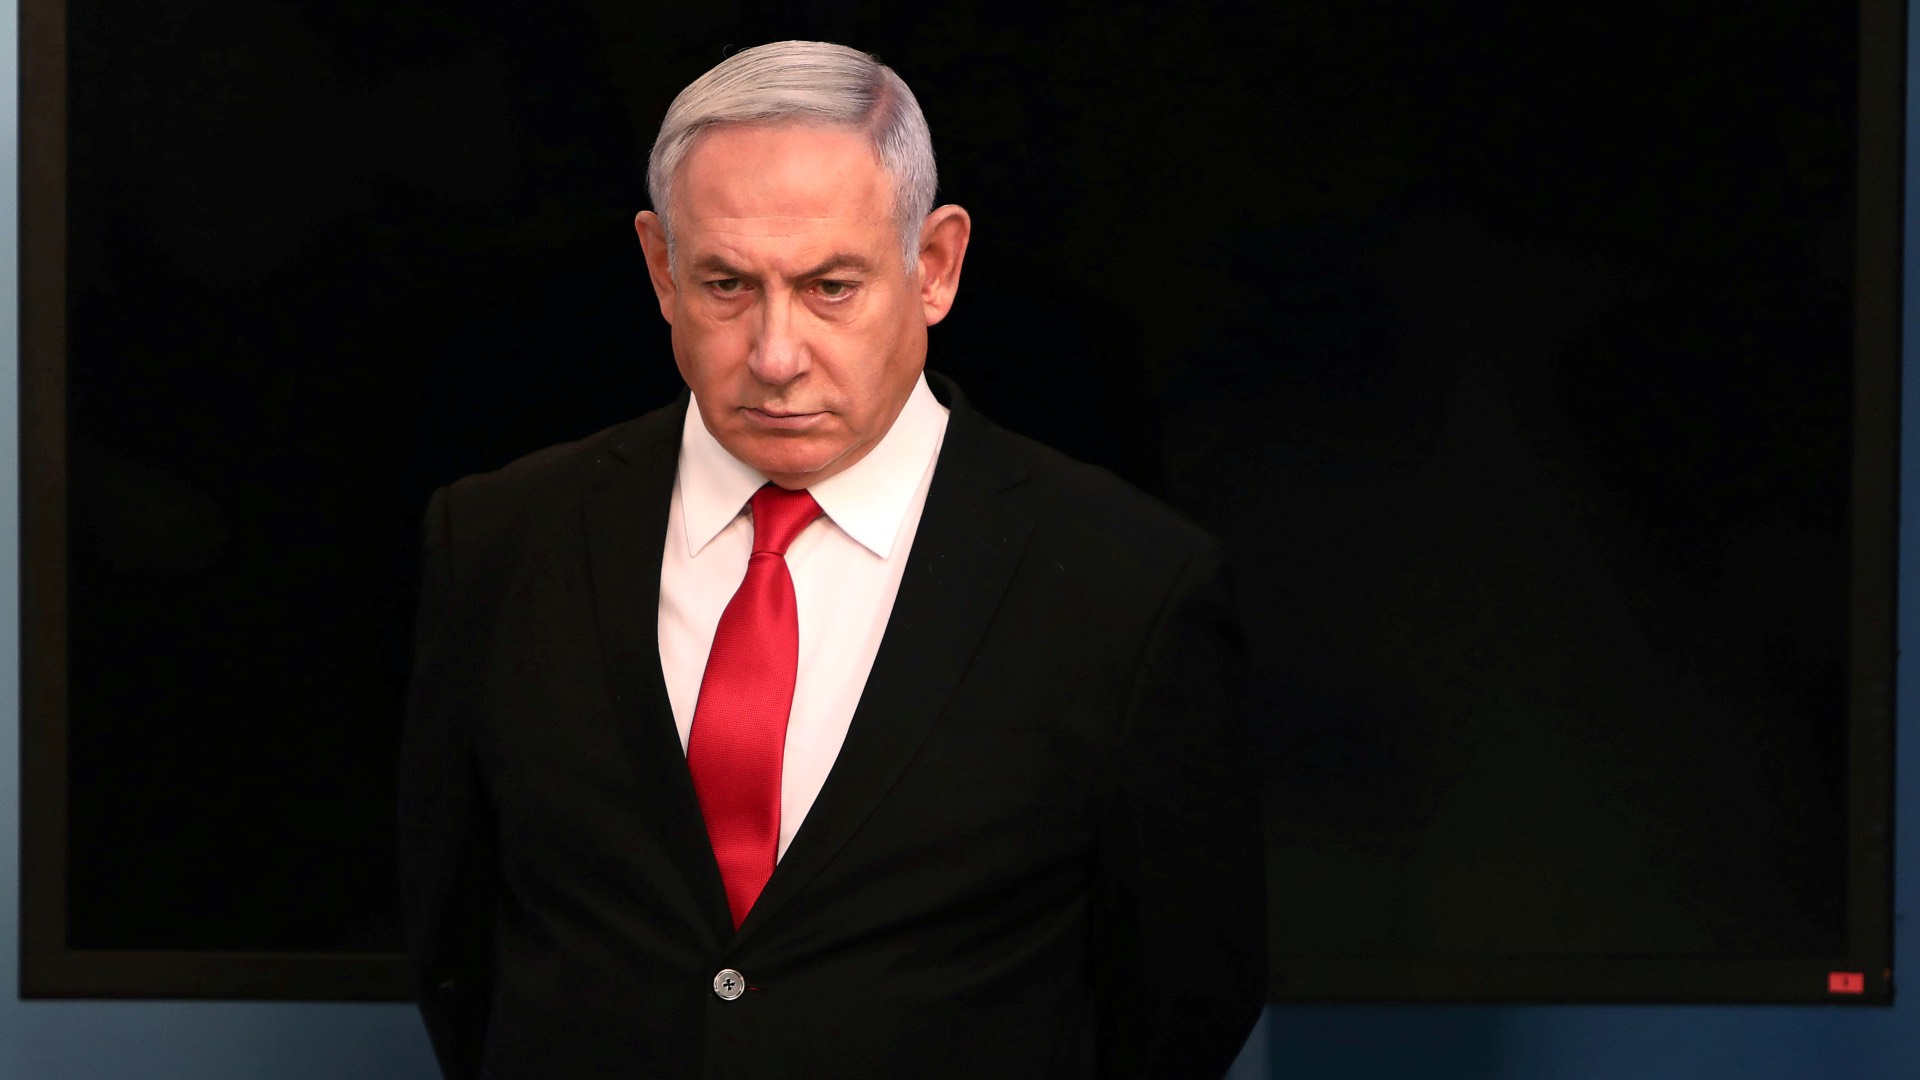 Netanyahu recibe el mandato para formar gobierno pese a estar procesado por corrupción